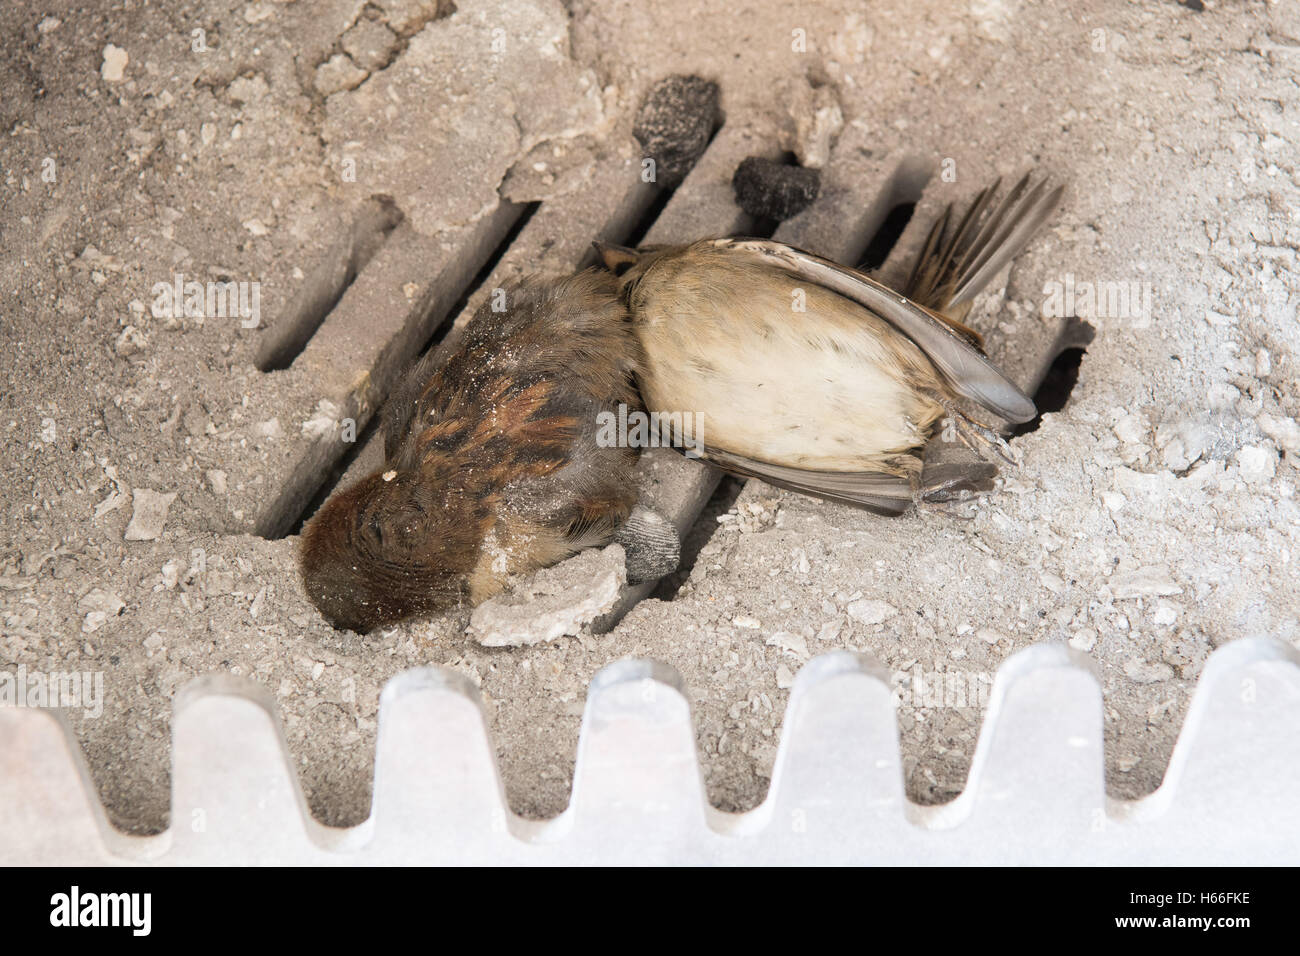 uccelli intrappolati in un camino - due uccelli morti (passeri) trovati all'interno di una stufa a legna dopo che gli occupanti sono tornati dalle vacanze dopo la diga Foto Stock